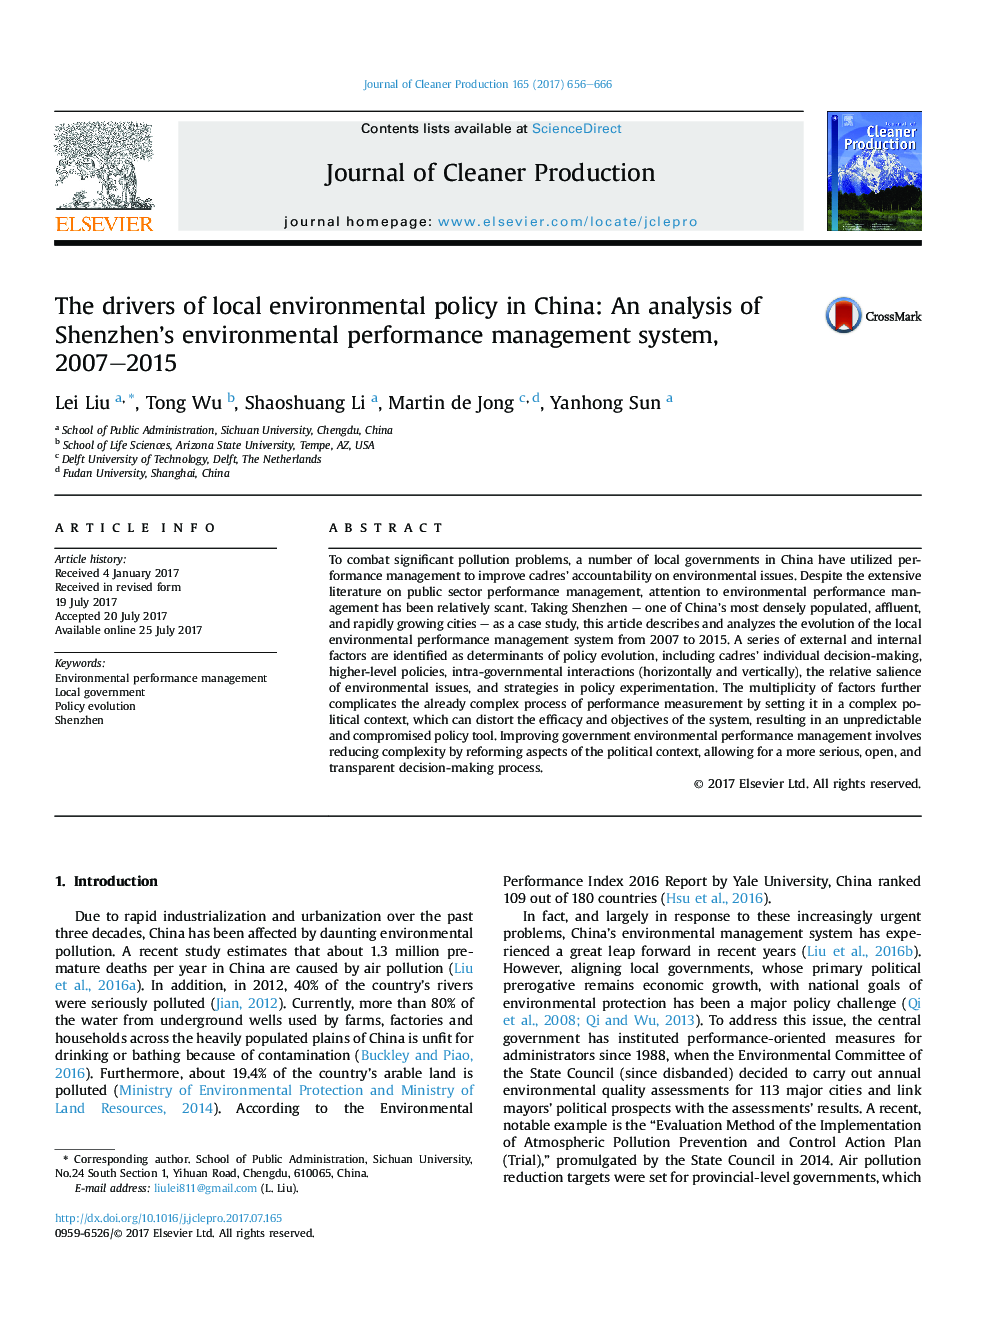 رانندگان سیاست زیست محیطی محلی در چین: تجزیه و تحلیل سیستم مدیریت عملکرد زیست محیطی در سال 2007-2015 